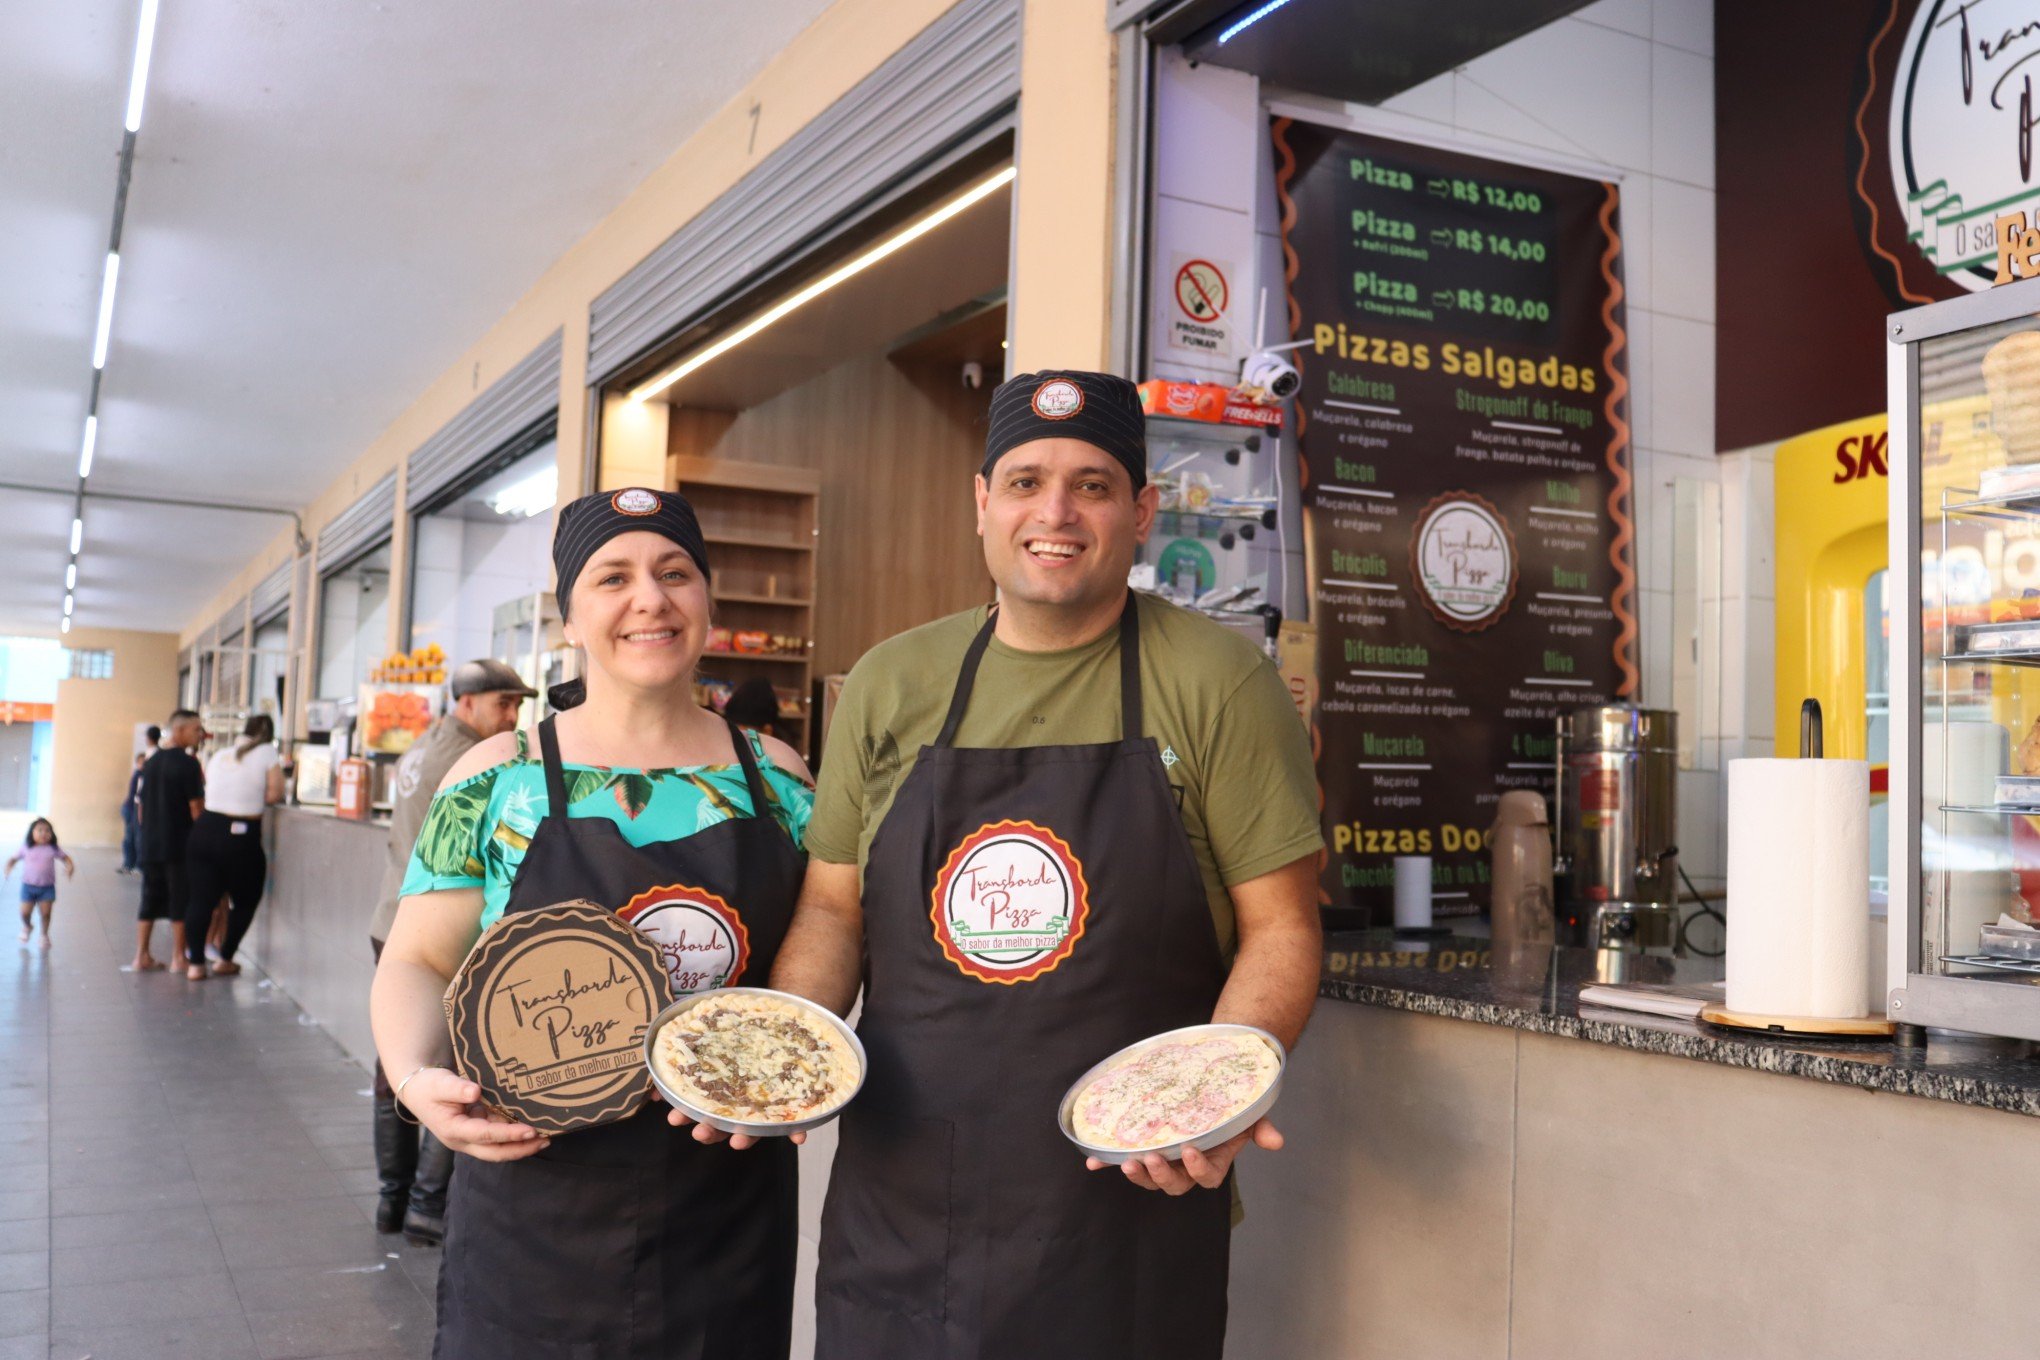 BANCAS DE NOVO HAMBURGO: Tradicional cafezinho e pizza feita na hora são algumas das opções vendidas pelos novos concessionários